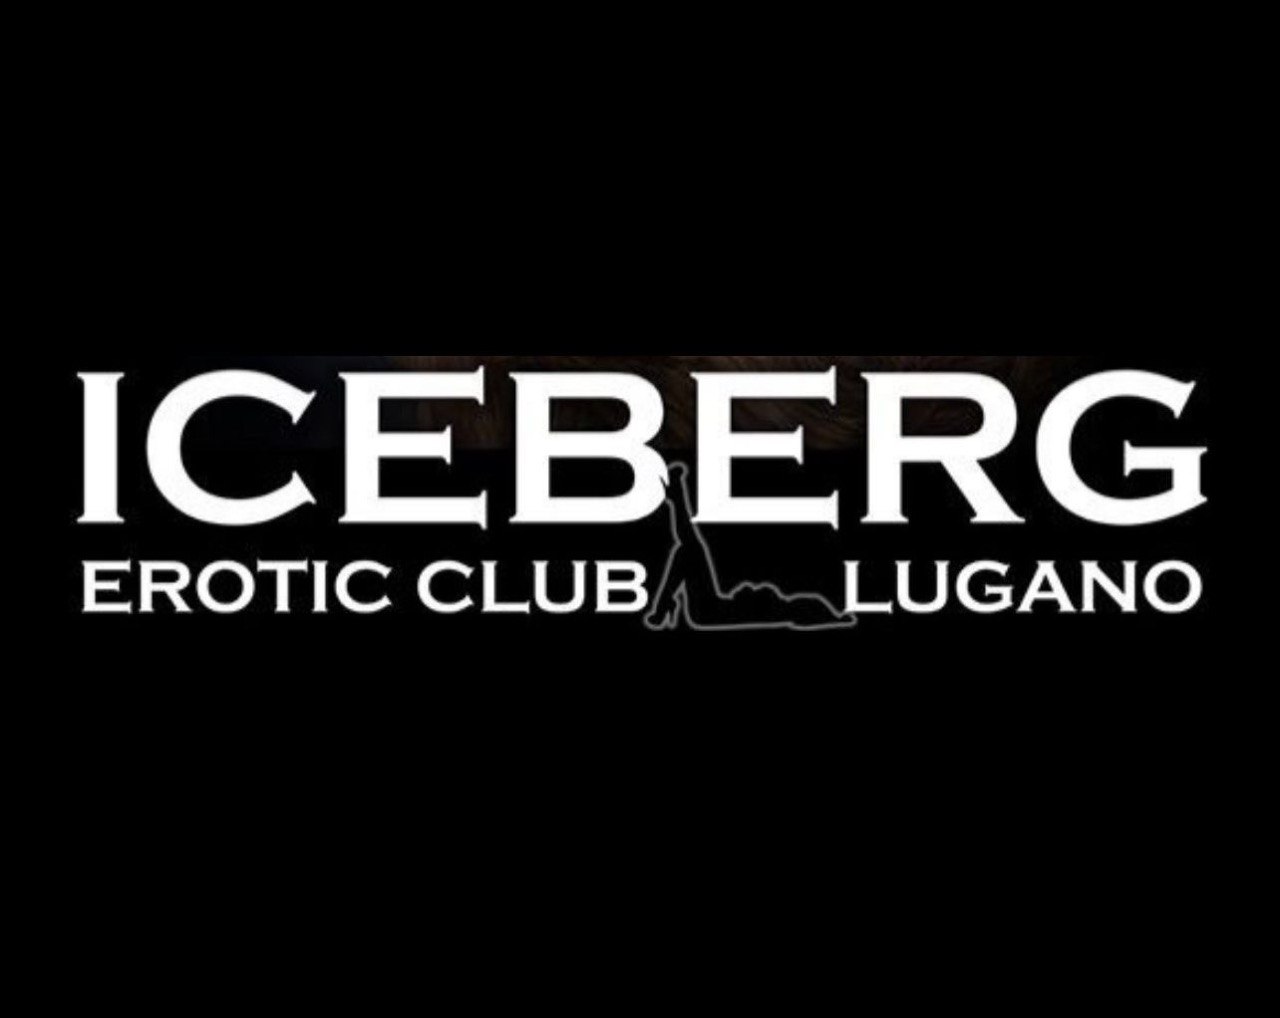 Iceberg Club